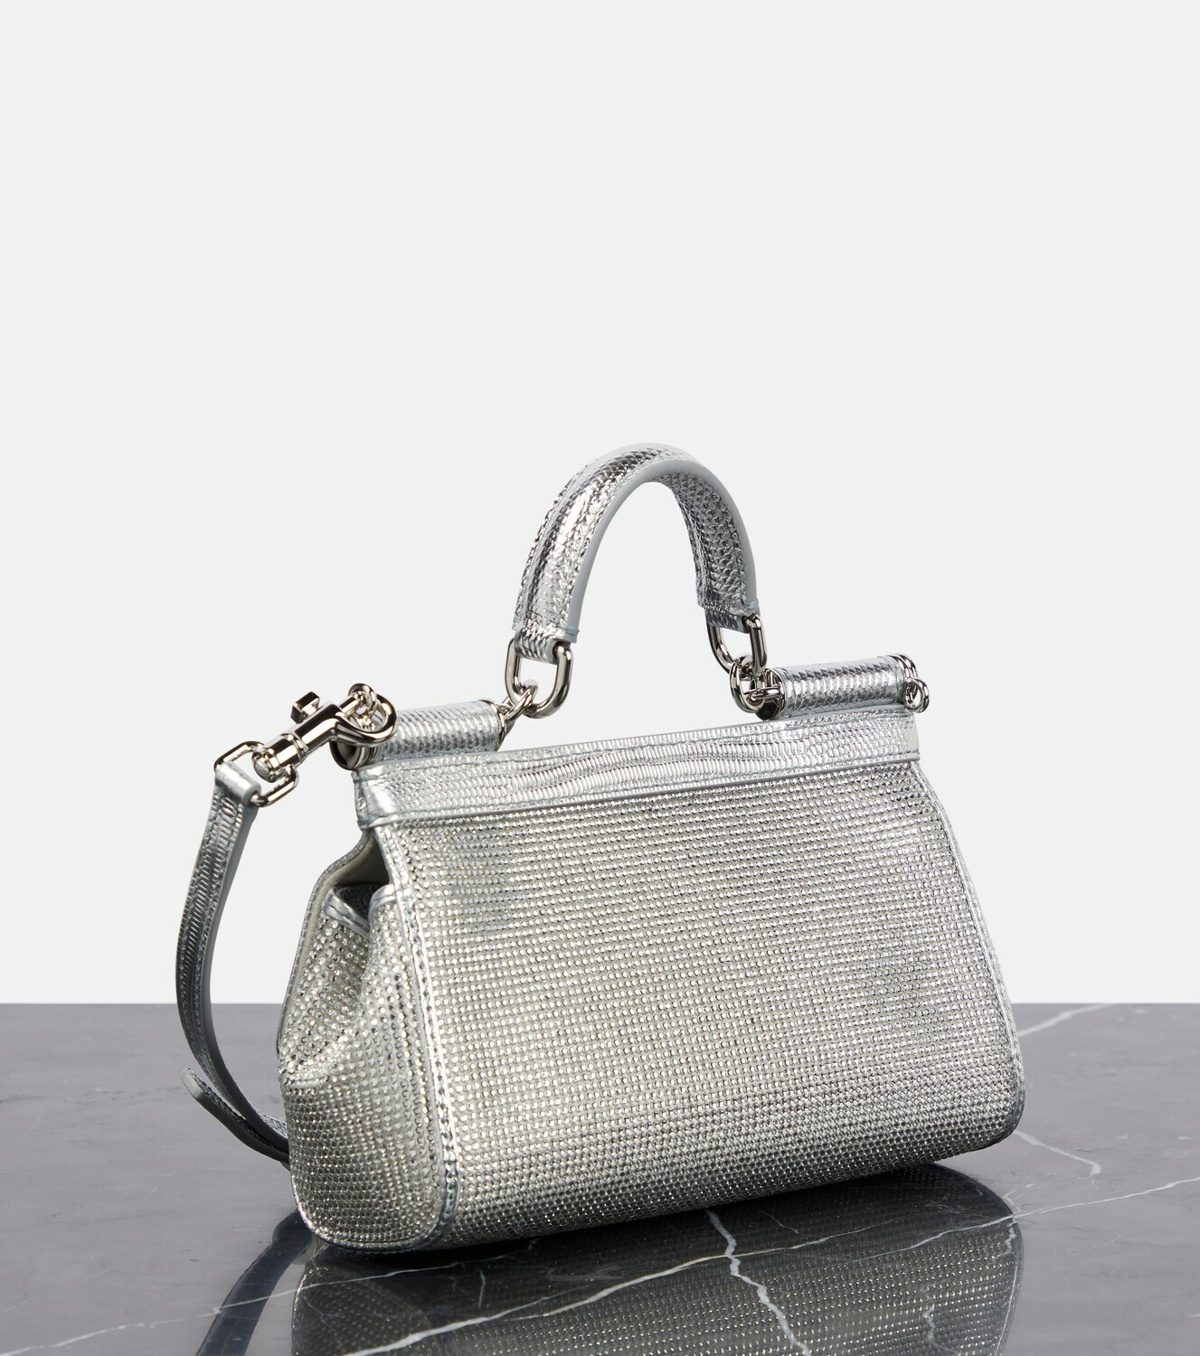 Dolce & Gabbana Silver Kim Kardashian Small Sicily Bag